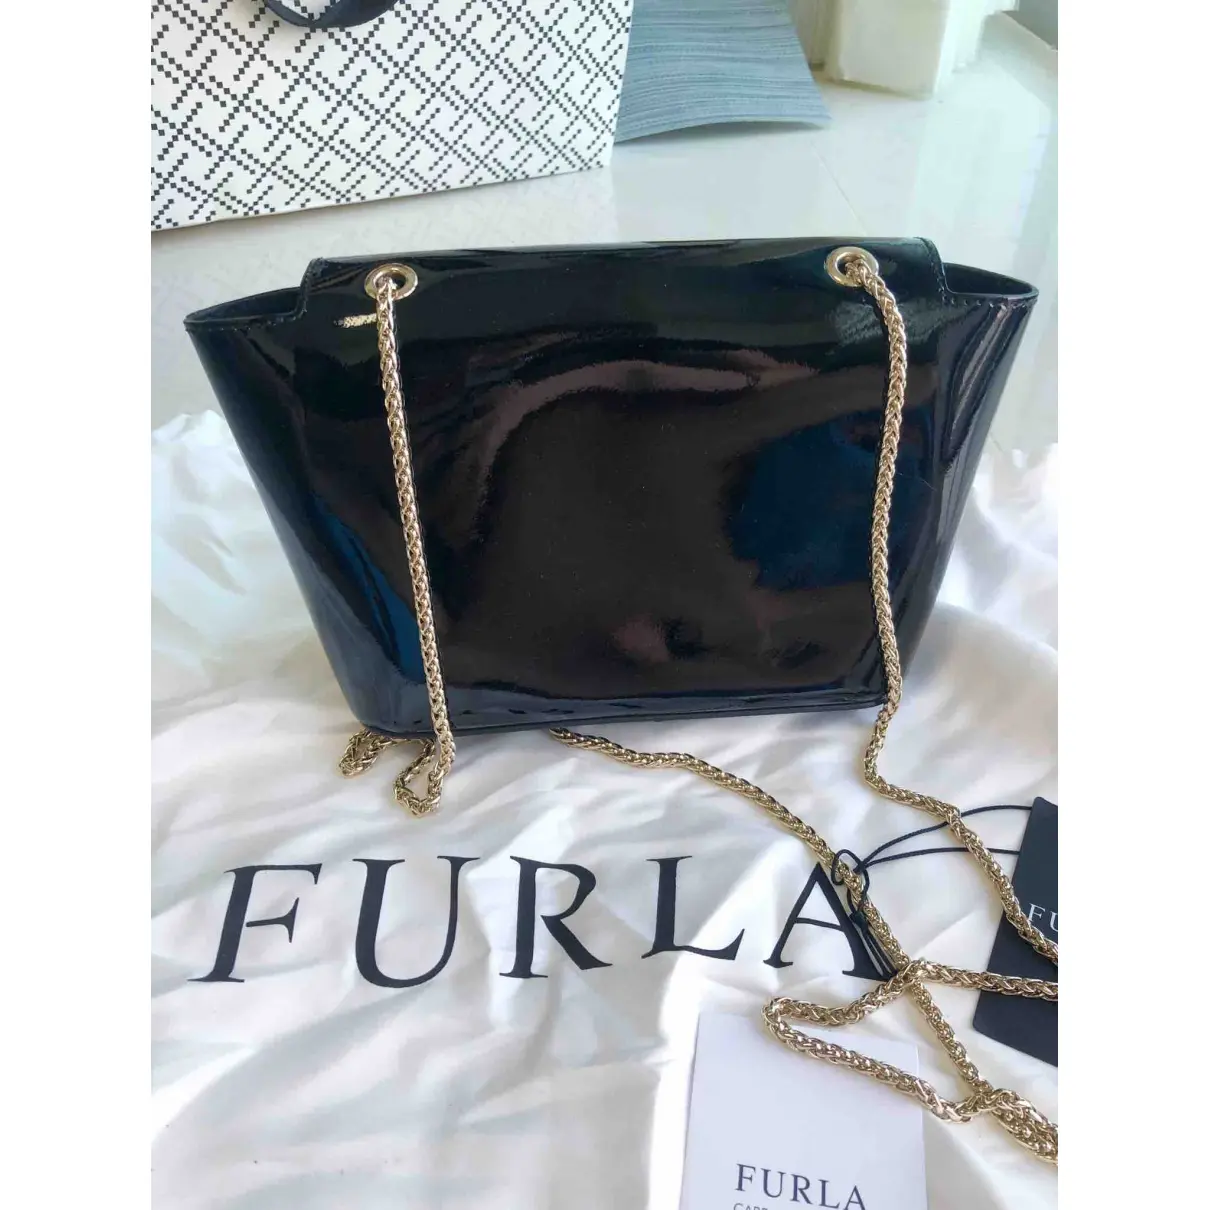 Buy Furla Metropolis patent leather mini bag online